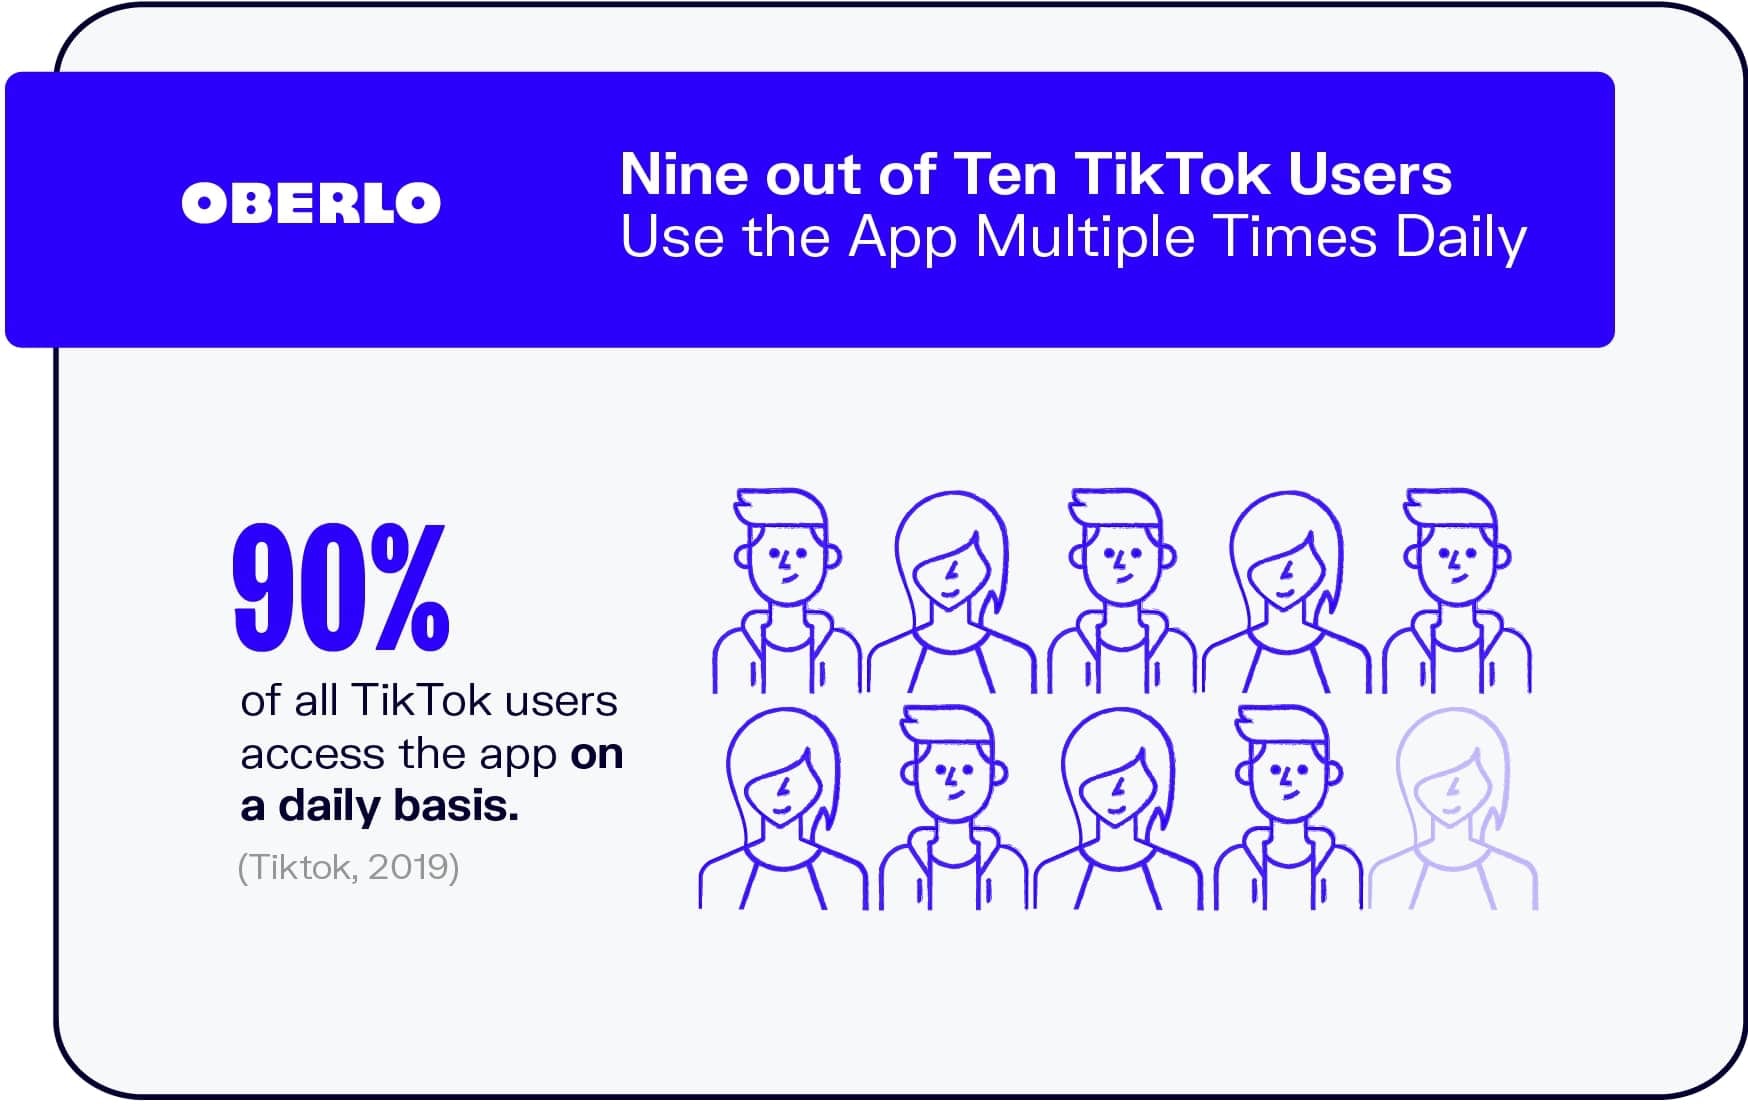 十分之九的TikTok用户每天多次使用该应用